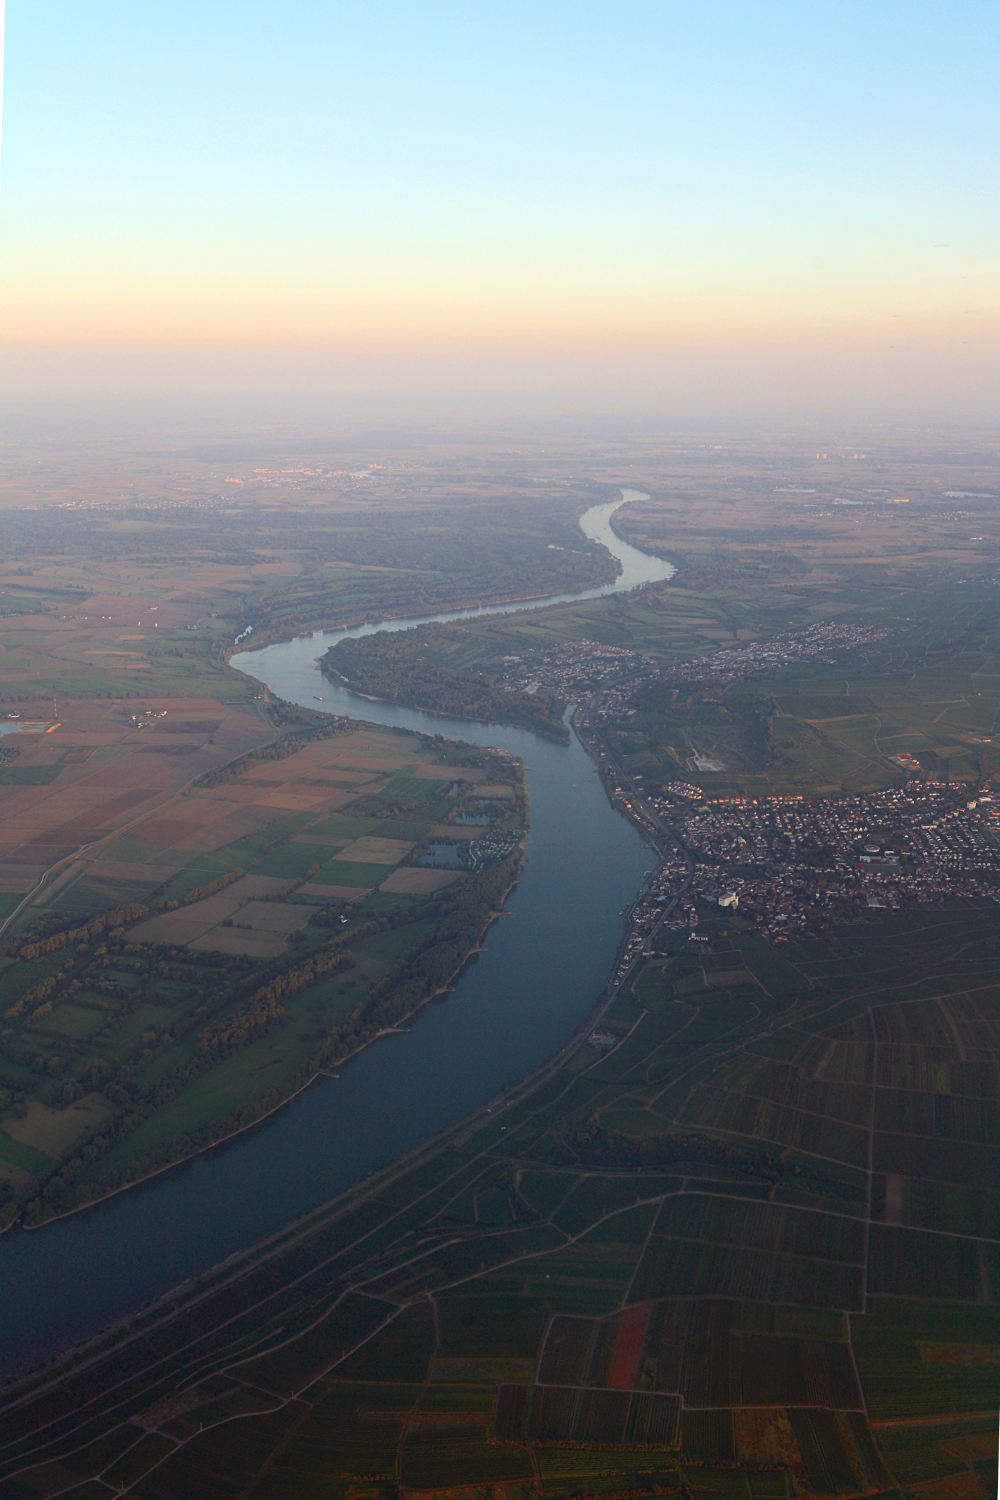 Der Main, einer der größten deutschen Flüsse